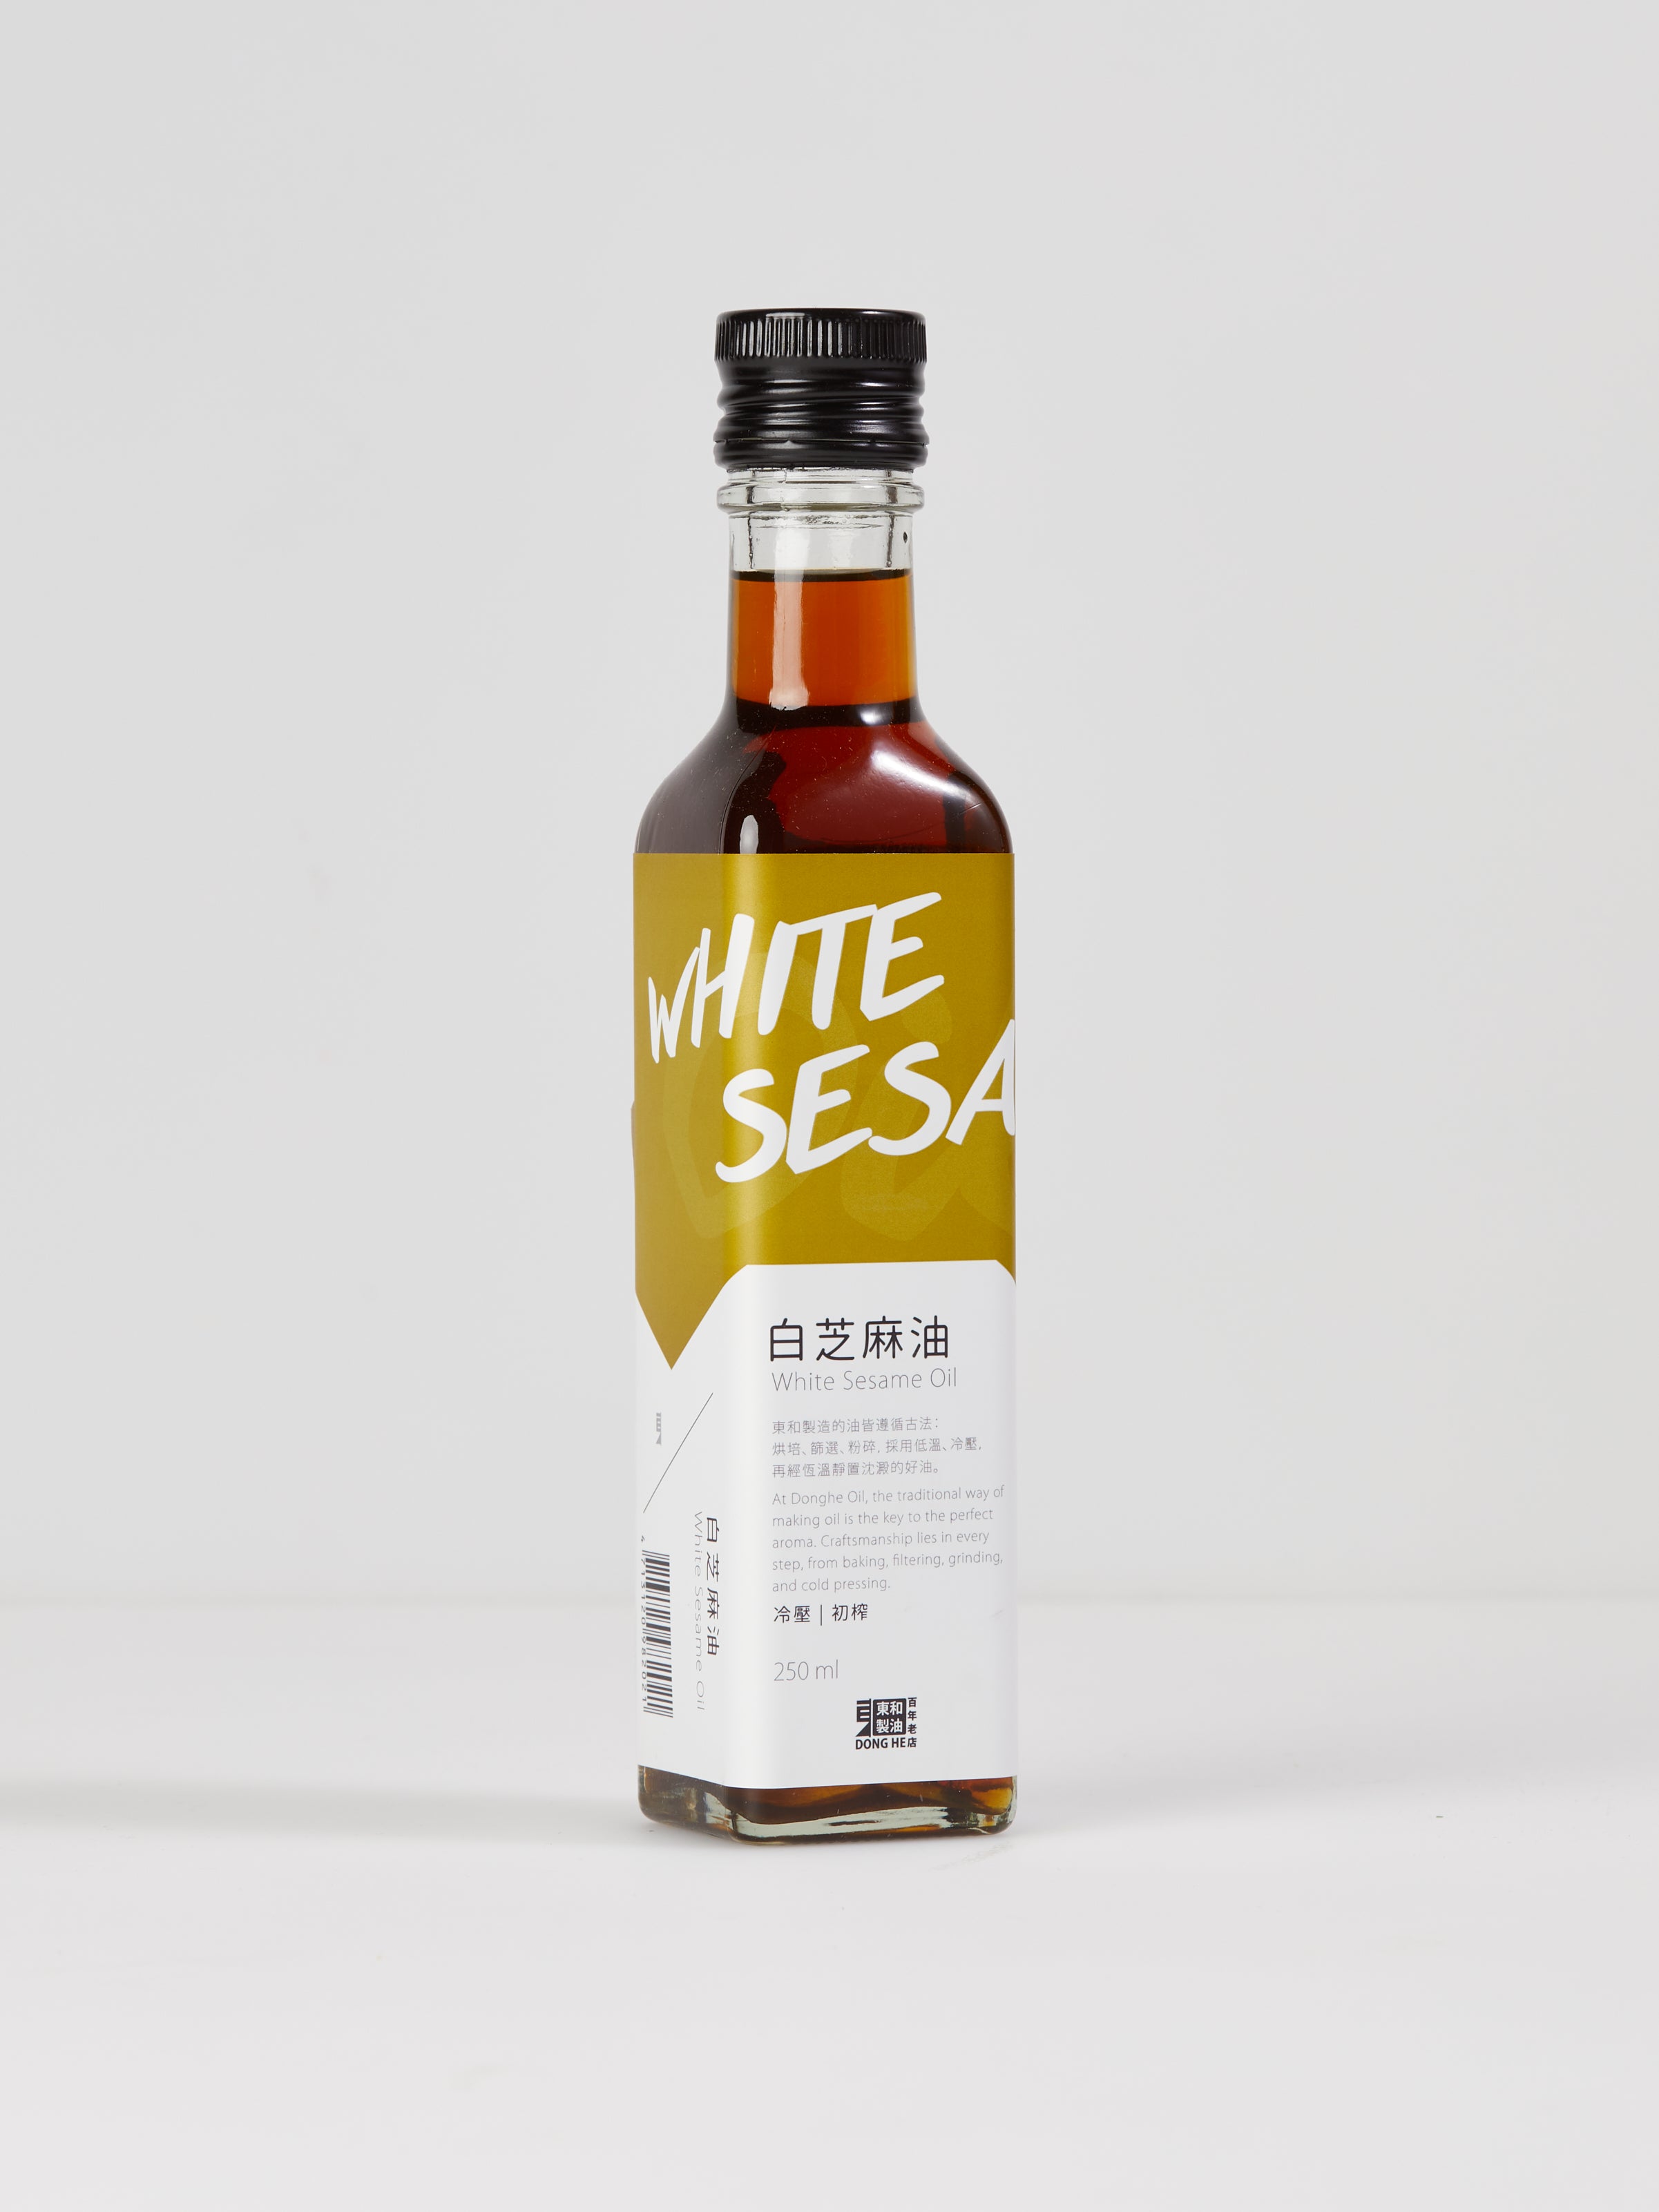 White Sesame Oil, Cold Pressed